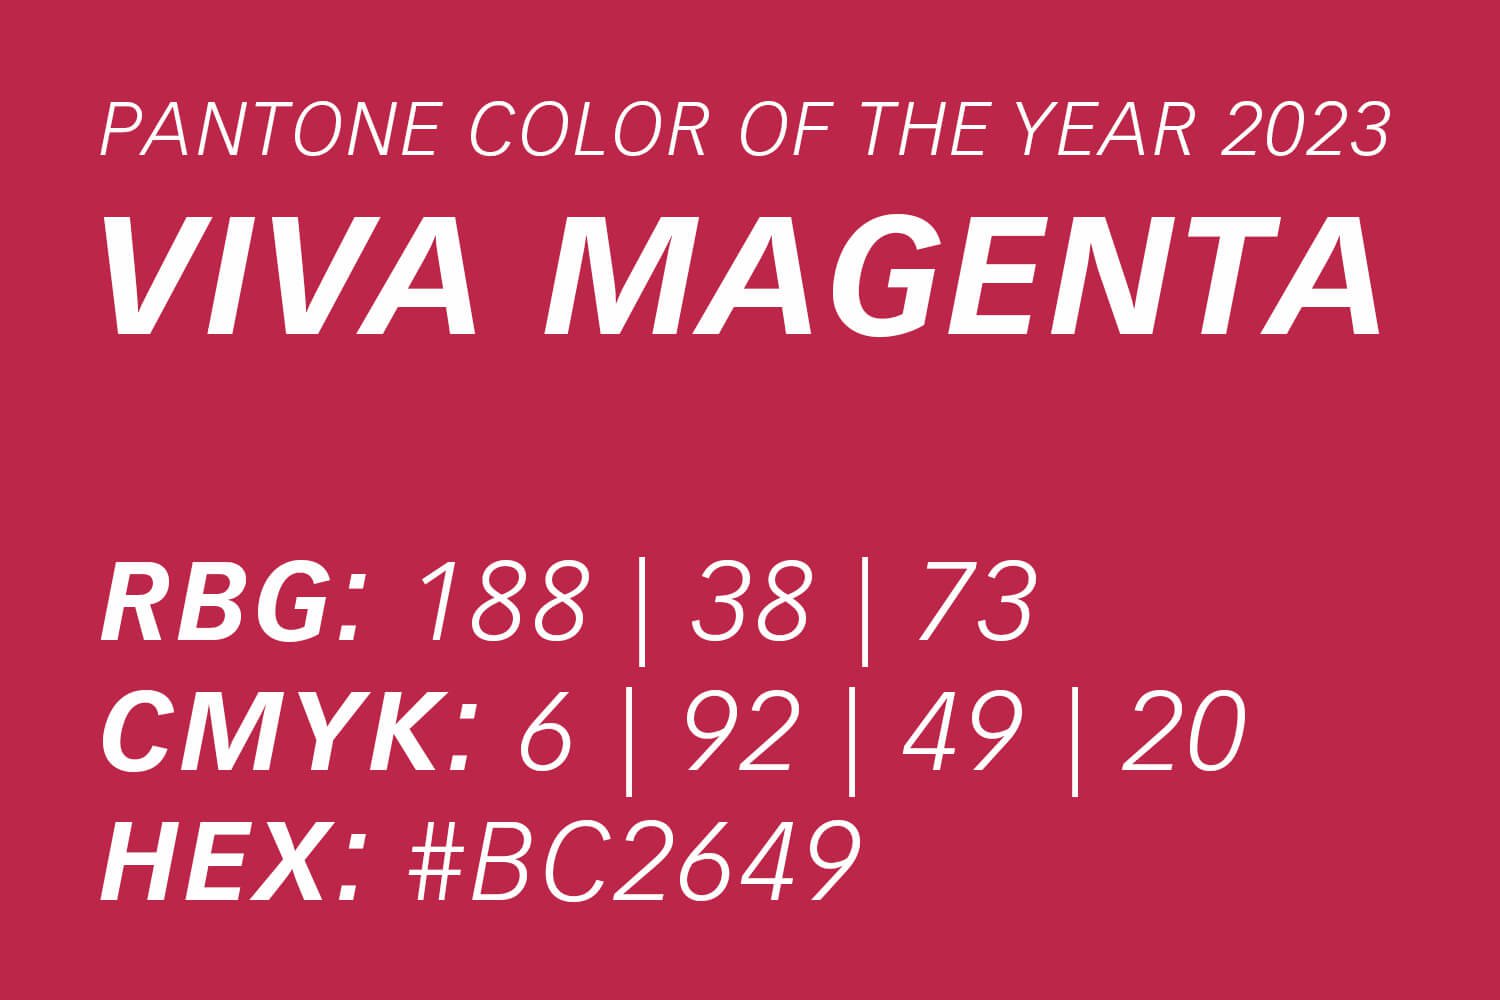 Pantone Farbe des Jahres 2023 Viva Magenta – Farbwerte des Magenta- bzw. Beeren-Farbtons in CMYK, RGB und HEX